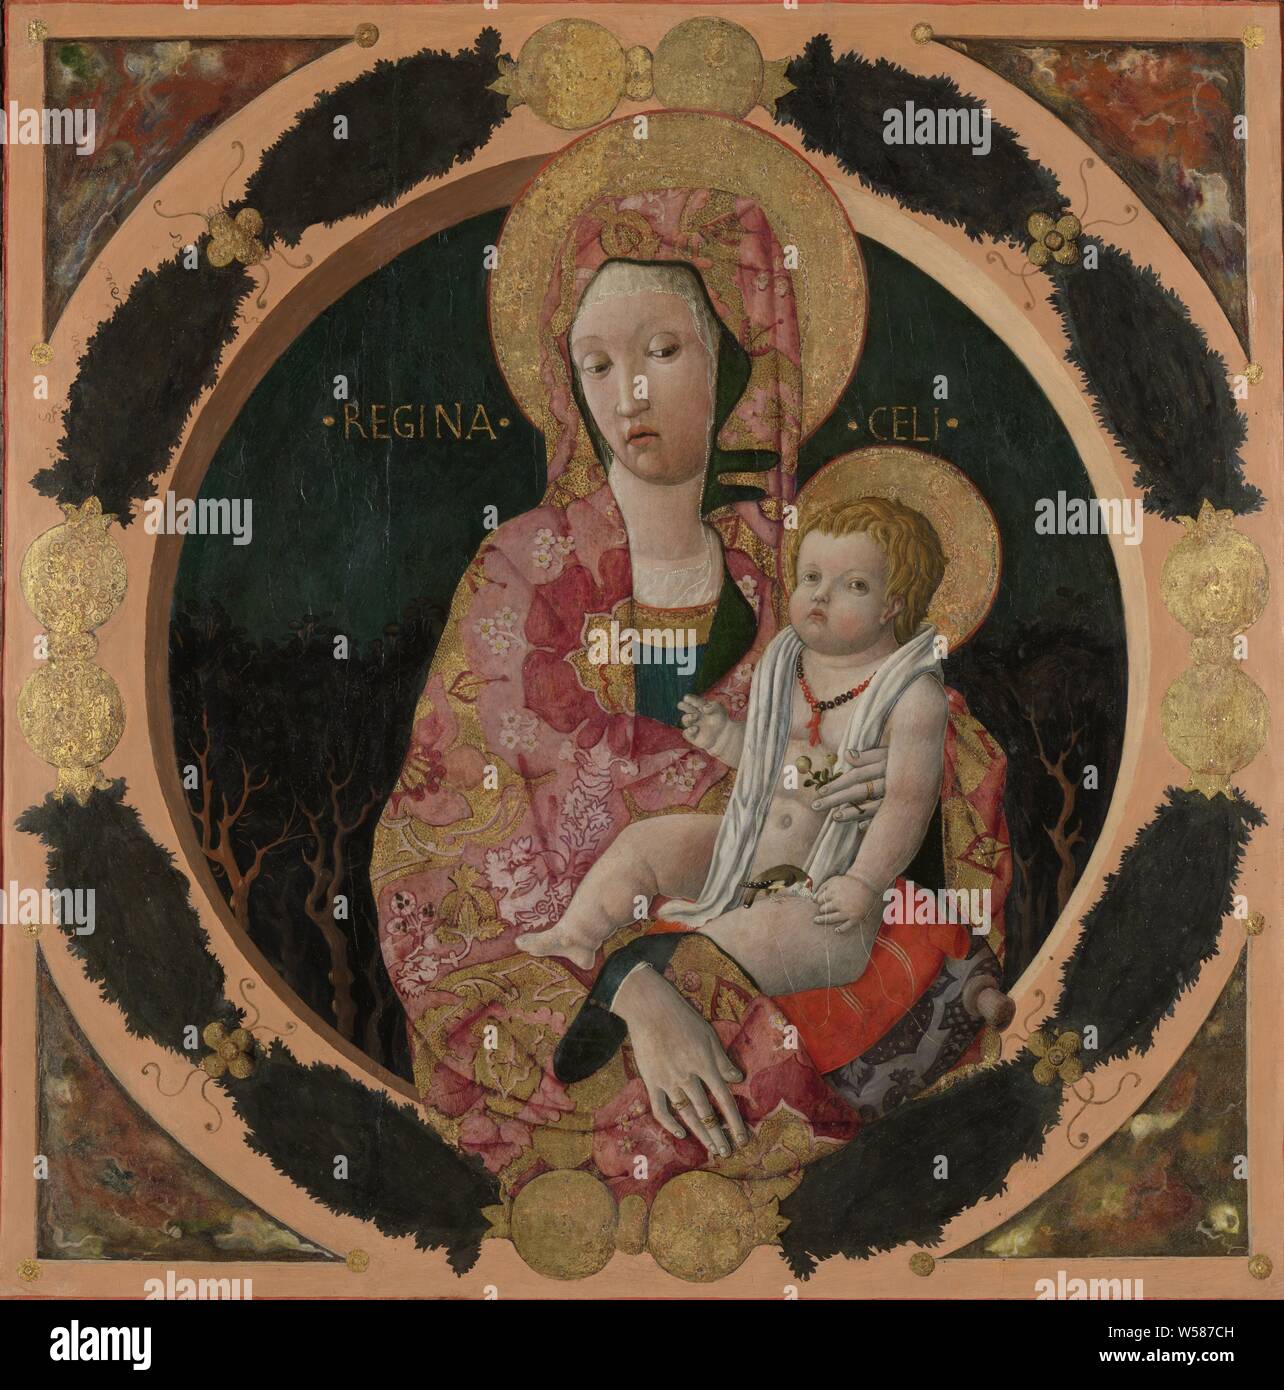 Vierge à l'enfant, Vierge Marie figure avec l'enfant Jésus assis sur un coussin sur ses genoux. Maria a une branche avec des fleurs ou fruits dans sa main, un oiseau mange de la main de l'enfant. Stylisé d'arbres en arrière-plan. Dans un cadre rond peint avec des feuilles et des fruits, "Regina Coeli", "Regina Angelorum', 'Maestà', Madonna, Mary assis ou excité, l'enfant Jésus en face de ses genoux (ou à l'avant ou à sa poitrine), Francesco Squarcione (cercle de), ch. 1440 - c. 1450, panel, tempera, peinture à l'huile (peinture), h 115 cm × w 114,5 cm × D 9 cm h 103,5 cm × w 102 cm Banque D'Images